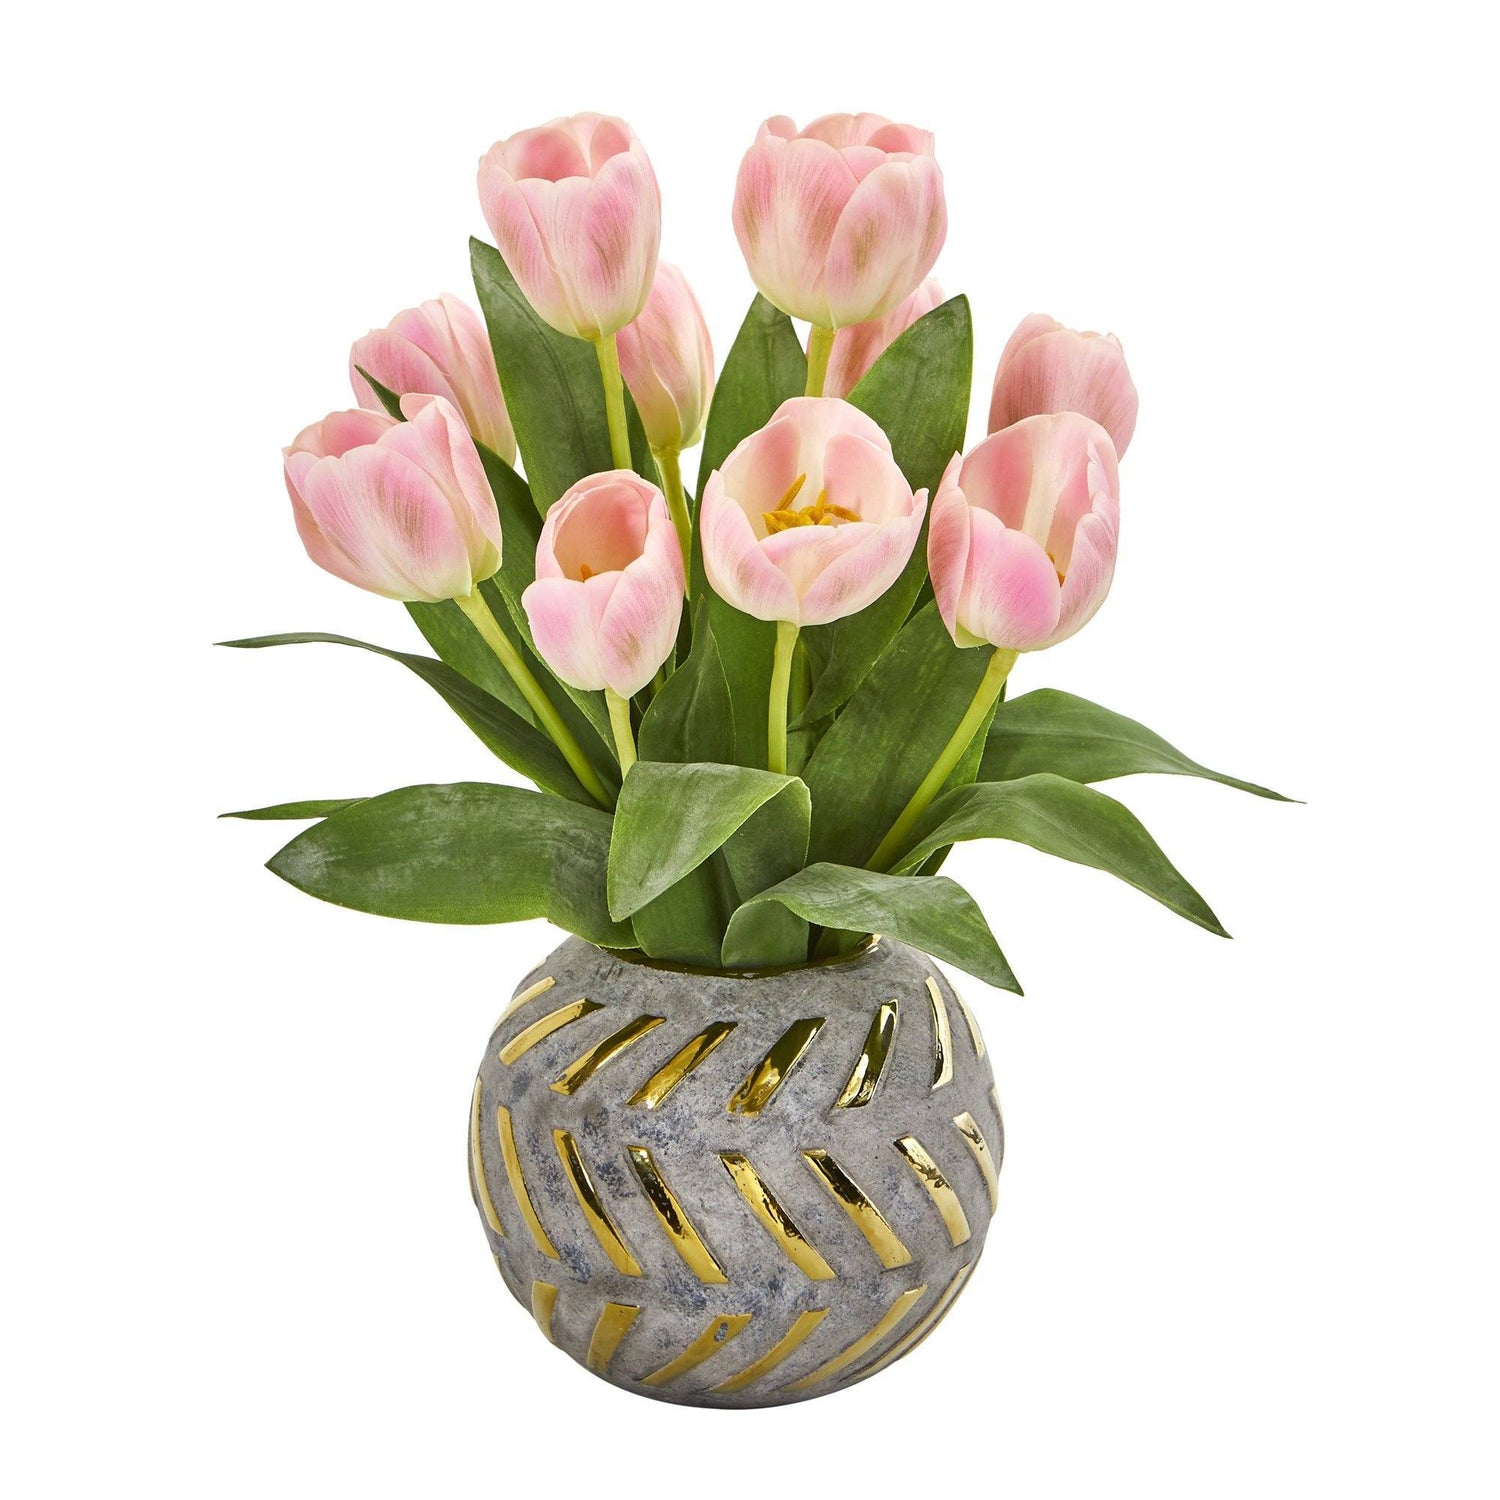 15” Tulip Artificial Arrangement in Decorative Vase